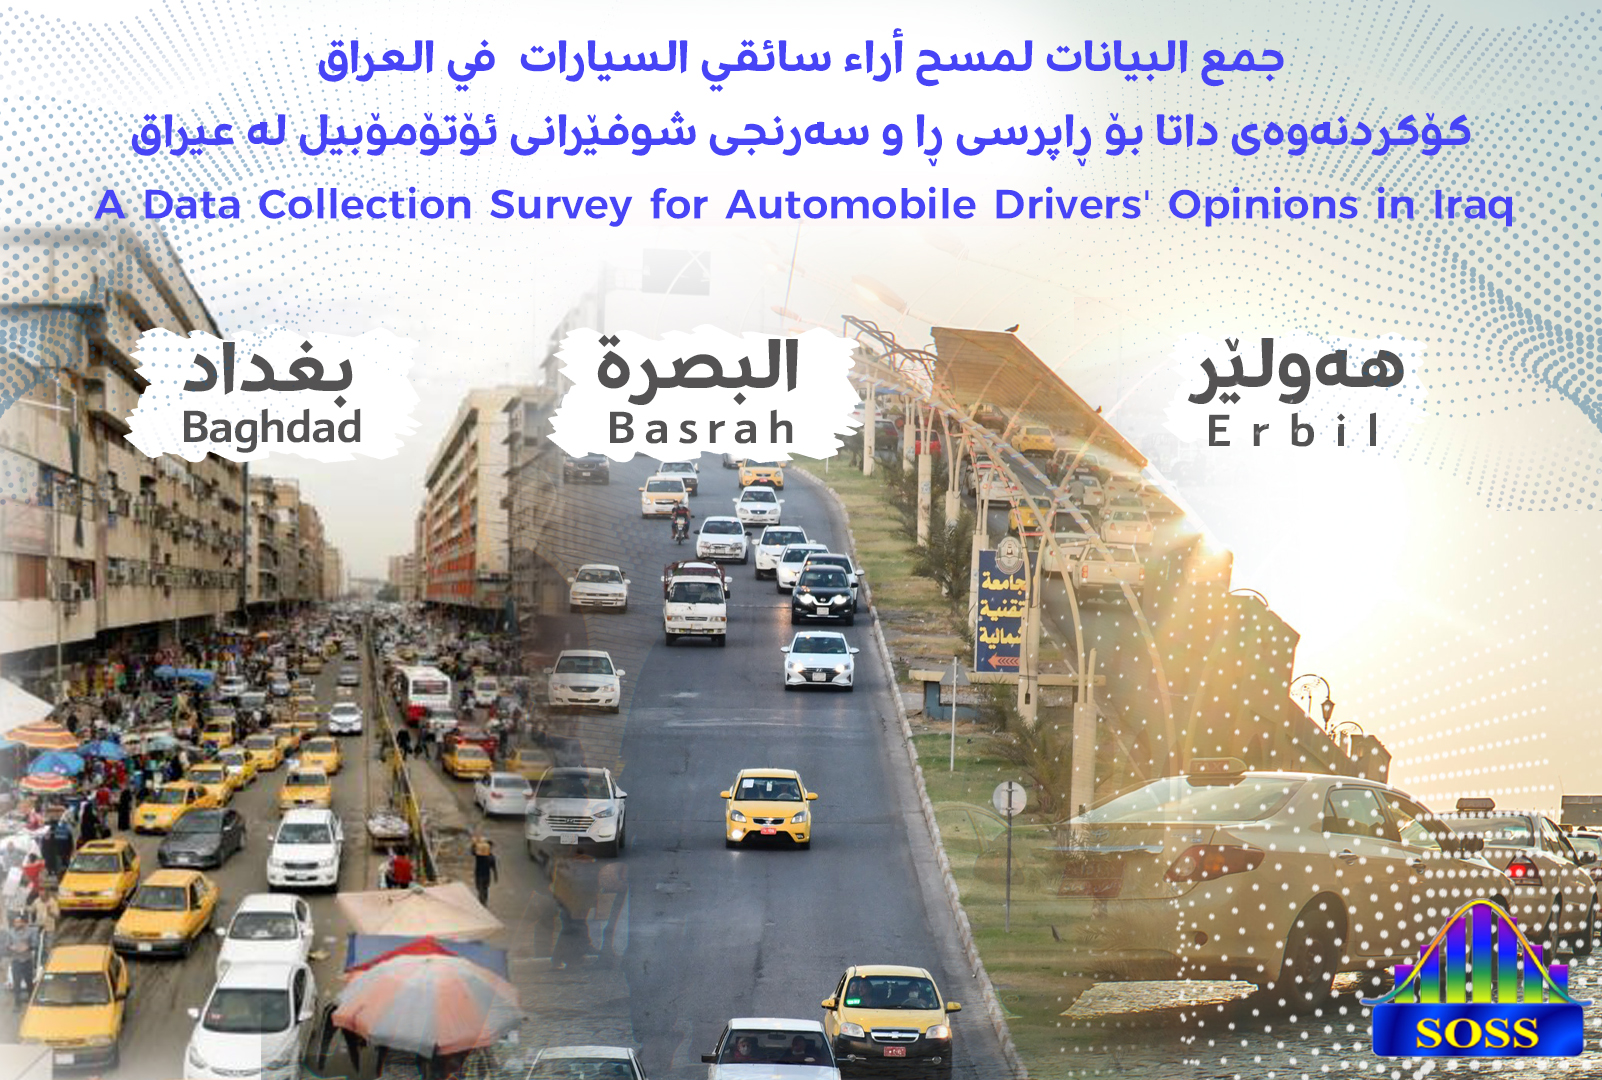 جمع البيانات لمسح أراء سائقي السيارات  في العراق